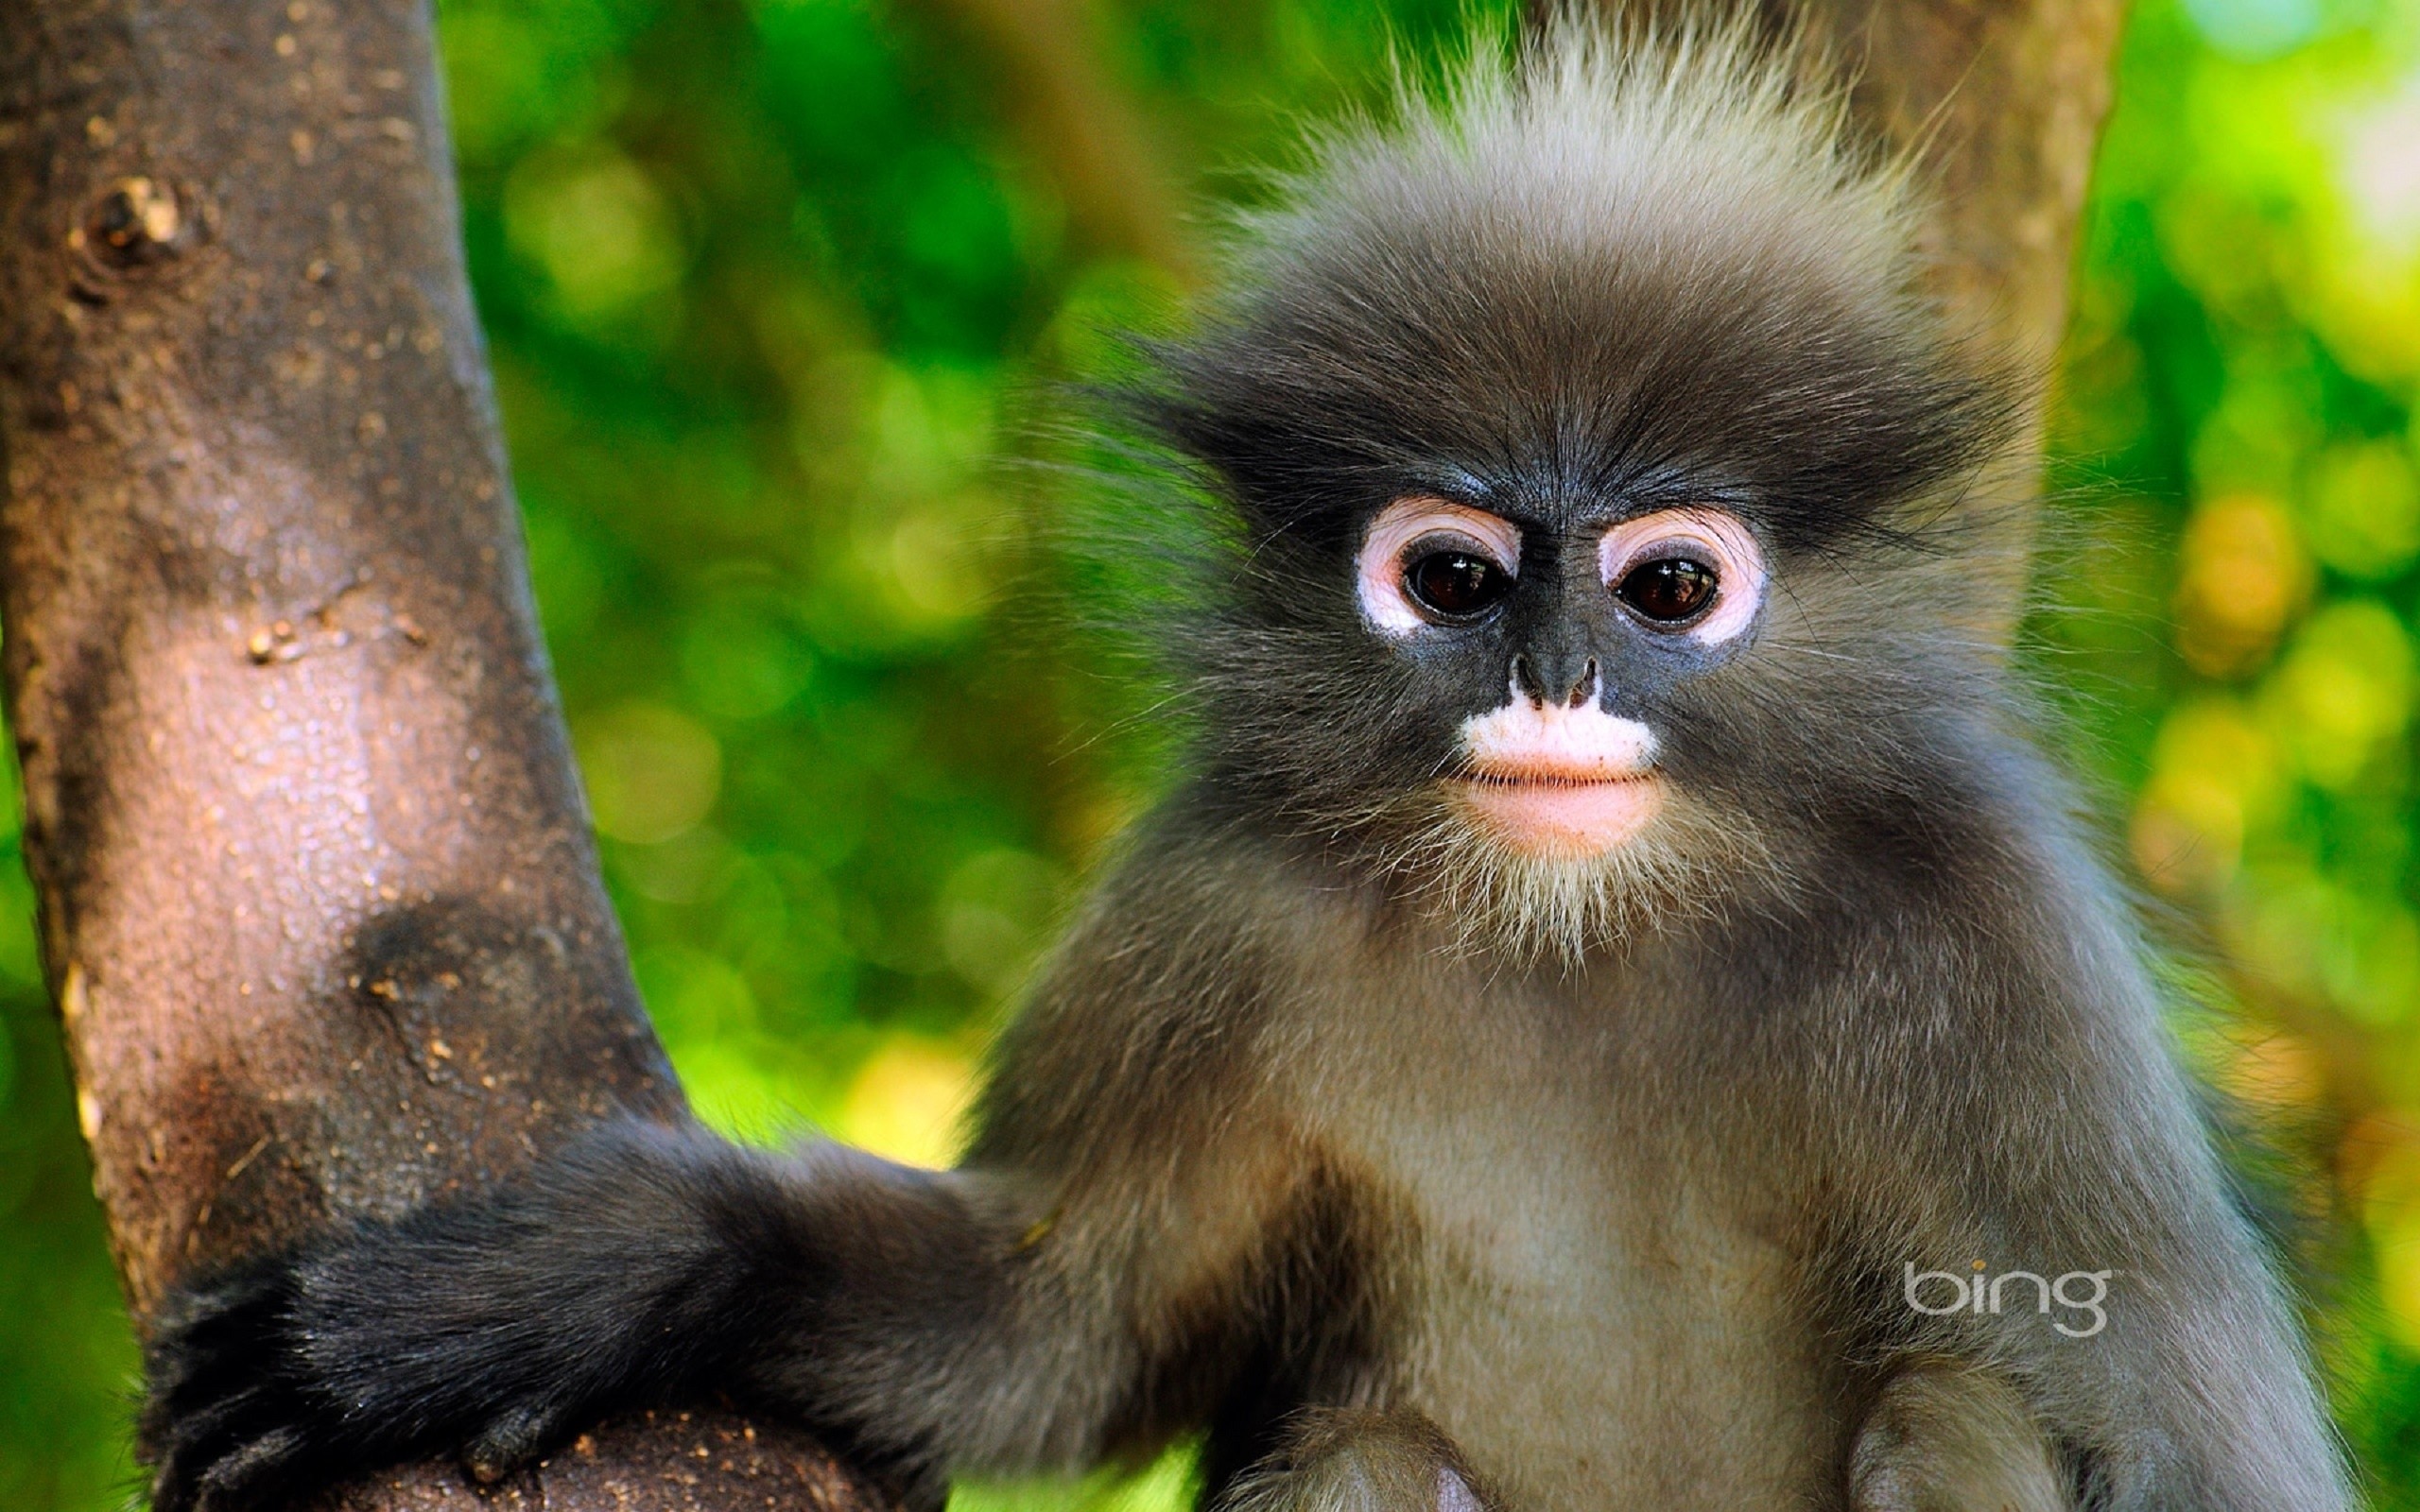 Bing monkey cute monkey cool baby monkey funny beauty baby